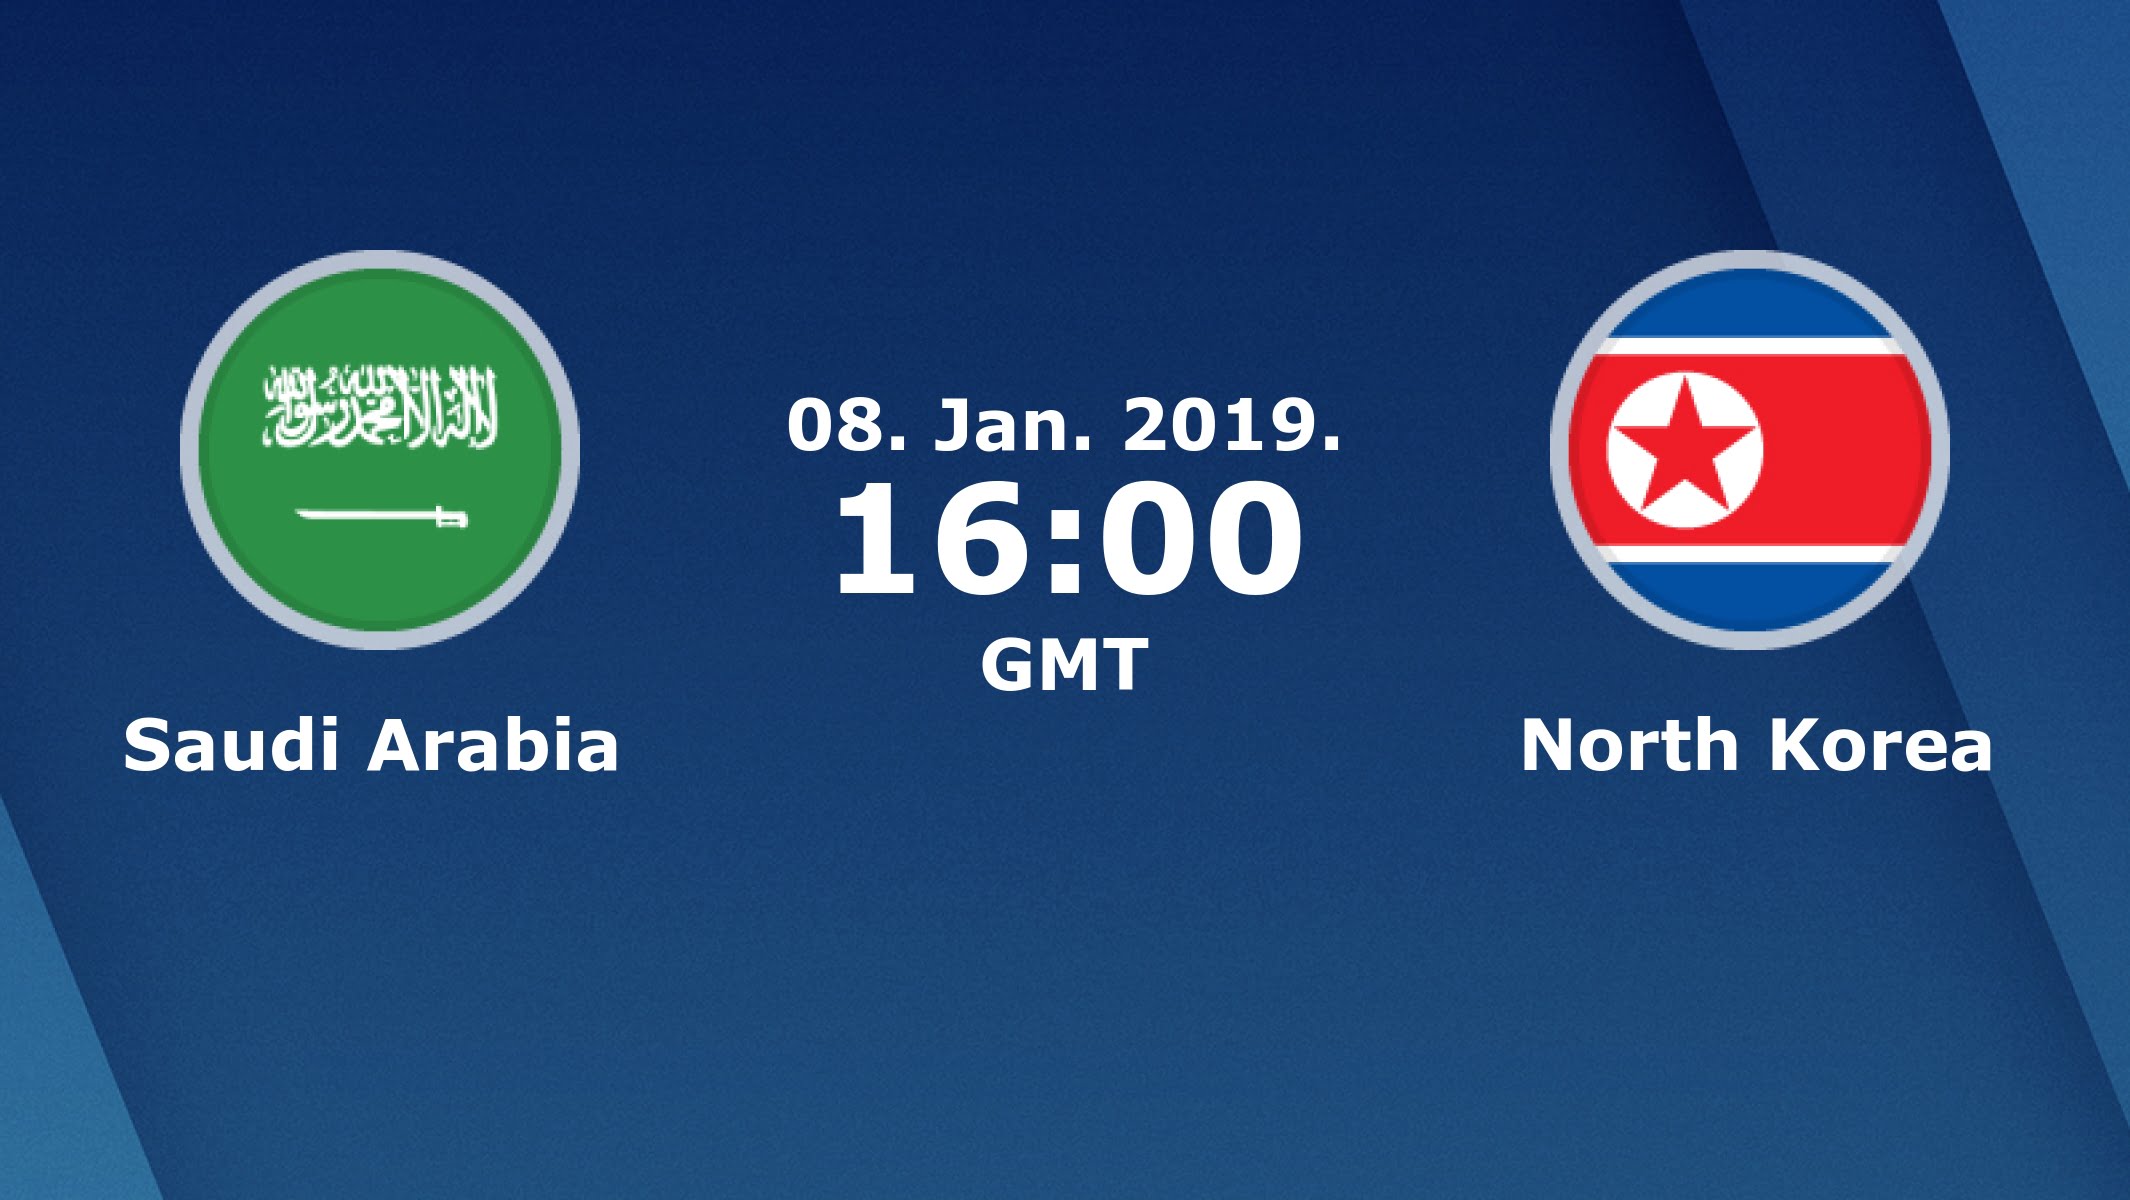 موعد مباراة السعودية وكوريا الشمالية فى كأس أسيا لكرة القدم والقنوات الناقلة